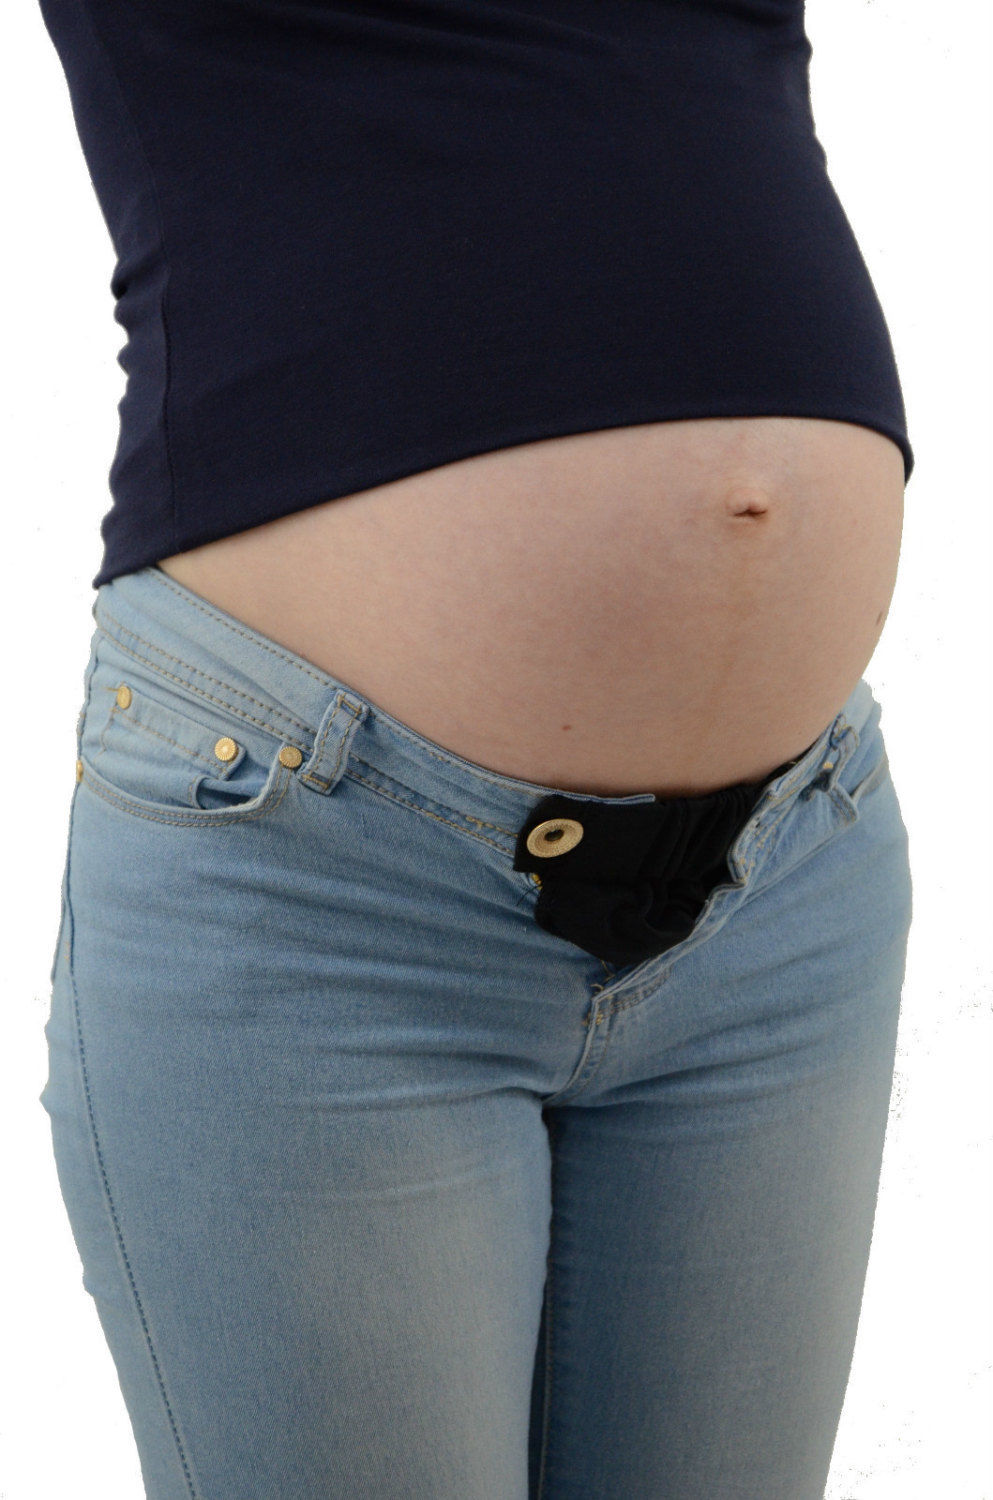 Jeans Maman - Pantalon de grossesse (femme enceinte )